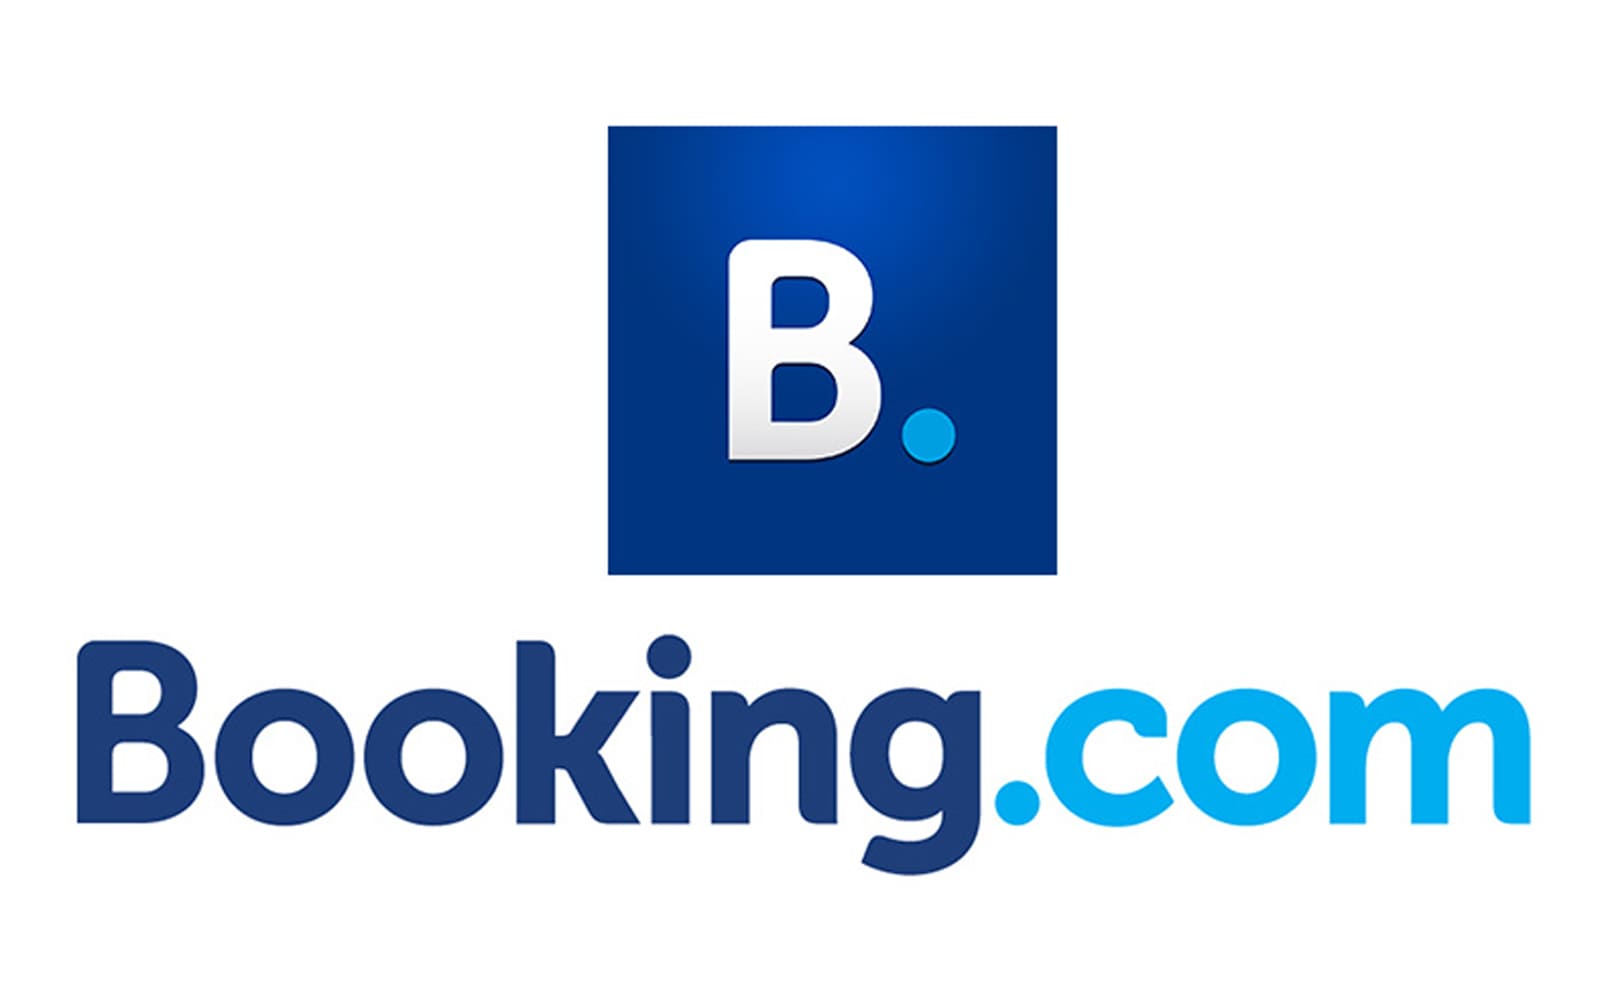 Booking.Com-Logo